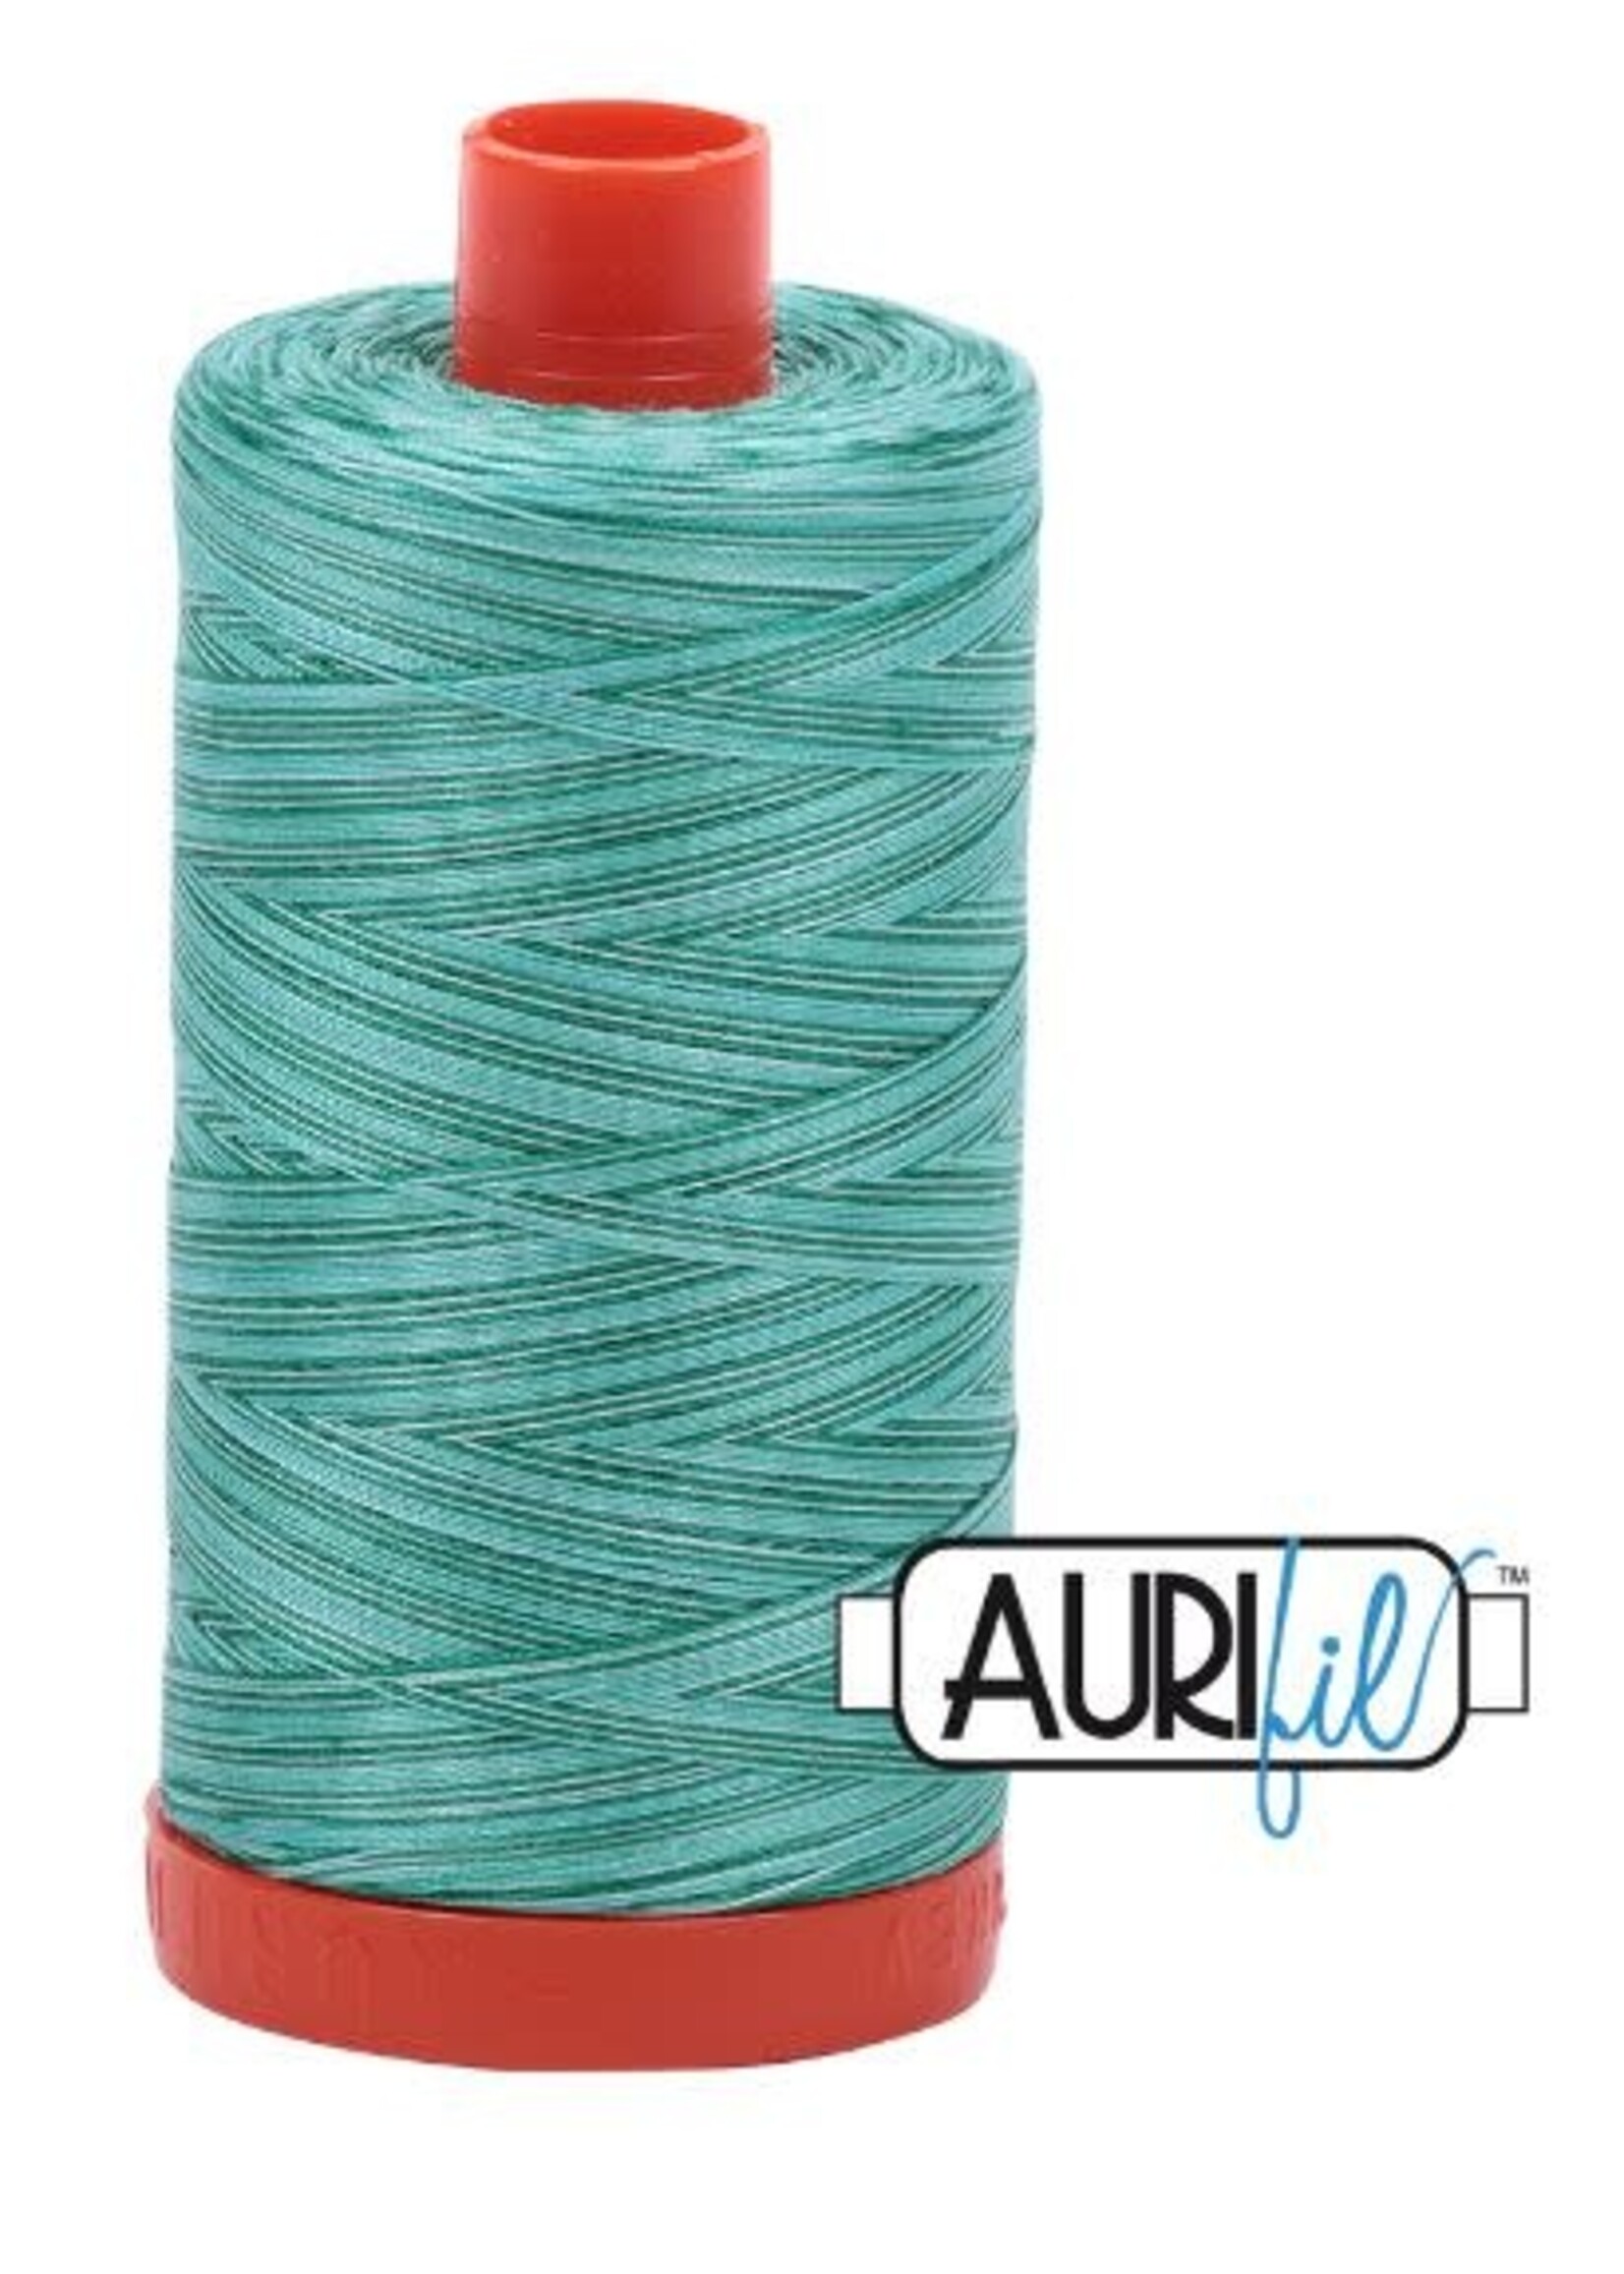 Aurifil Aurifil Mako Cotton Thread 50wt 1422yds Variegated Creme de Menthe